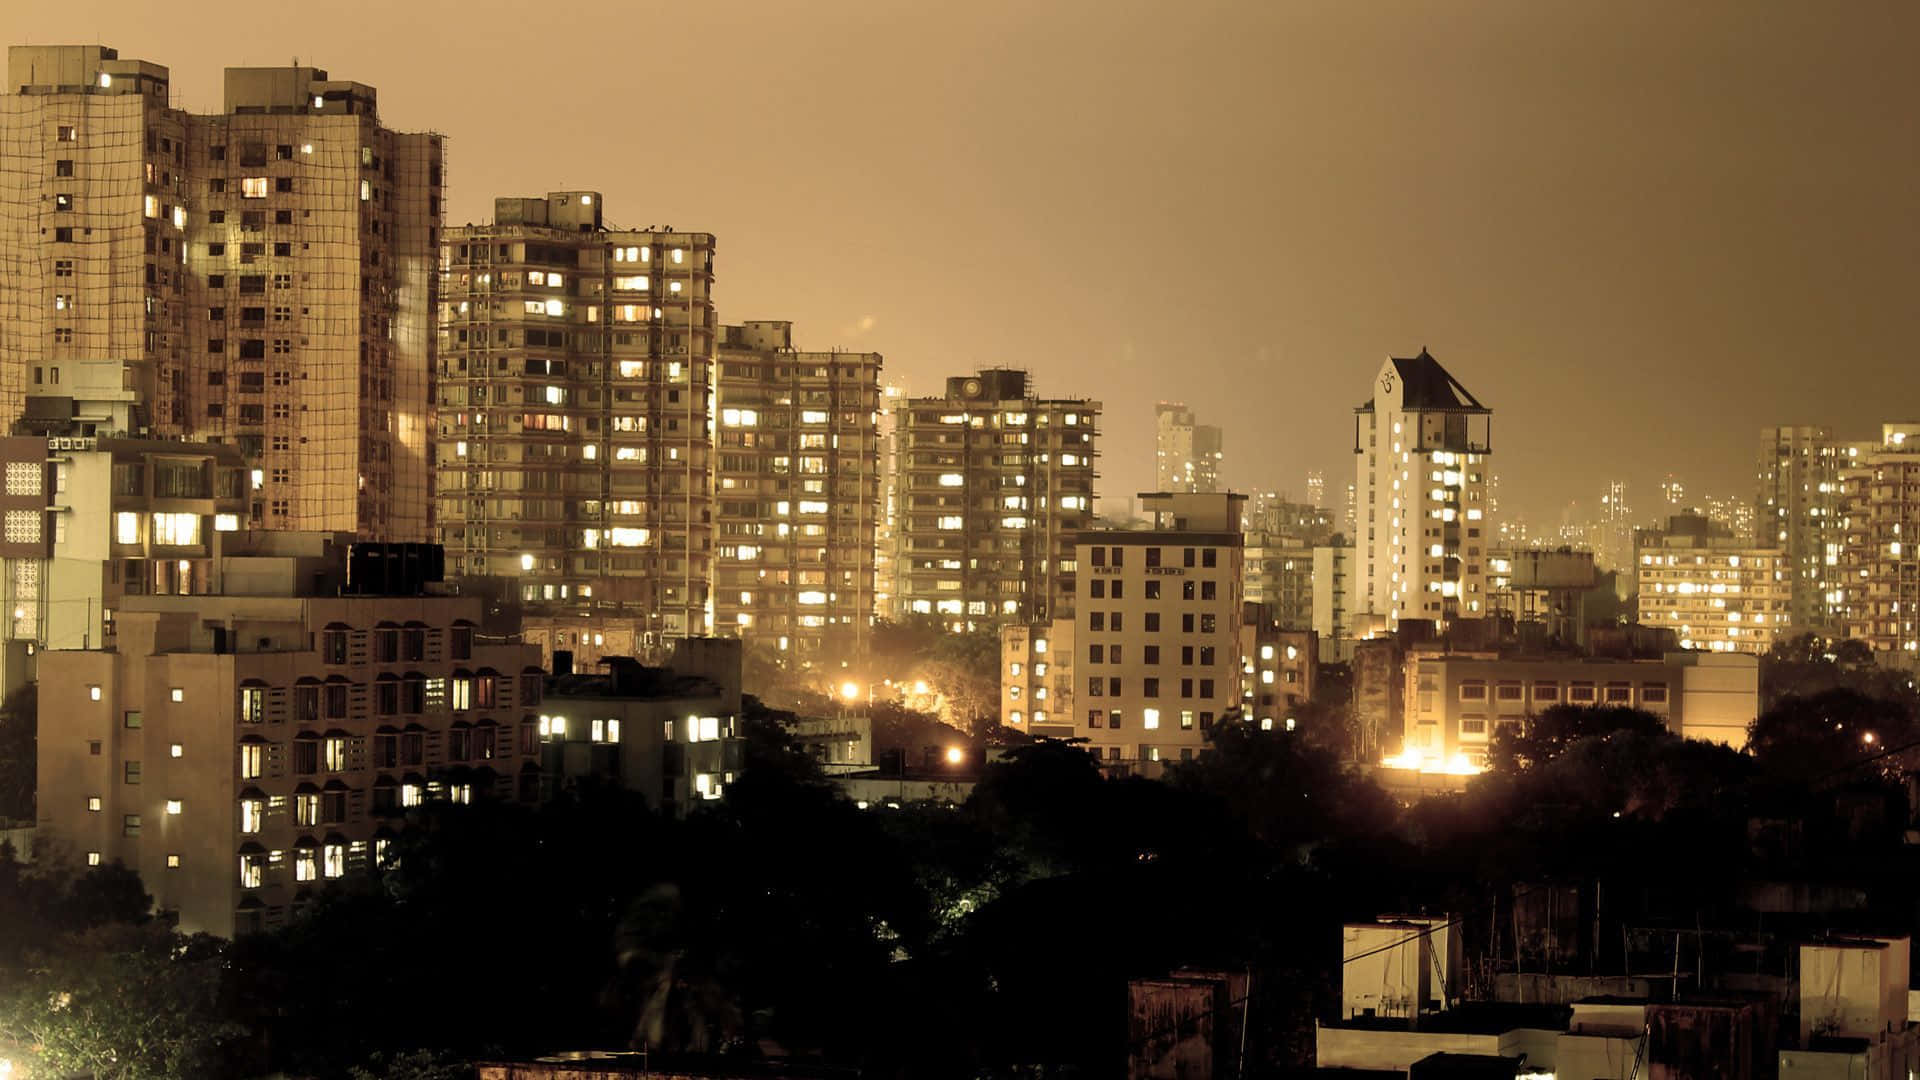 Mumbai1920 X 1080 Baggrundsbillede.